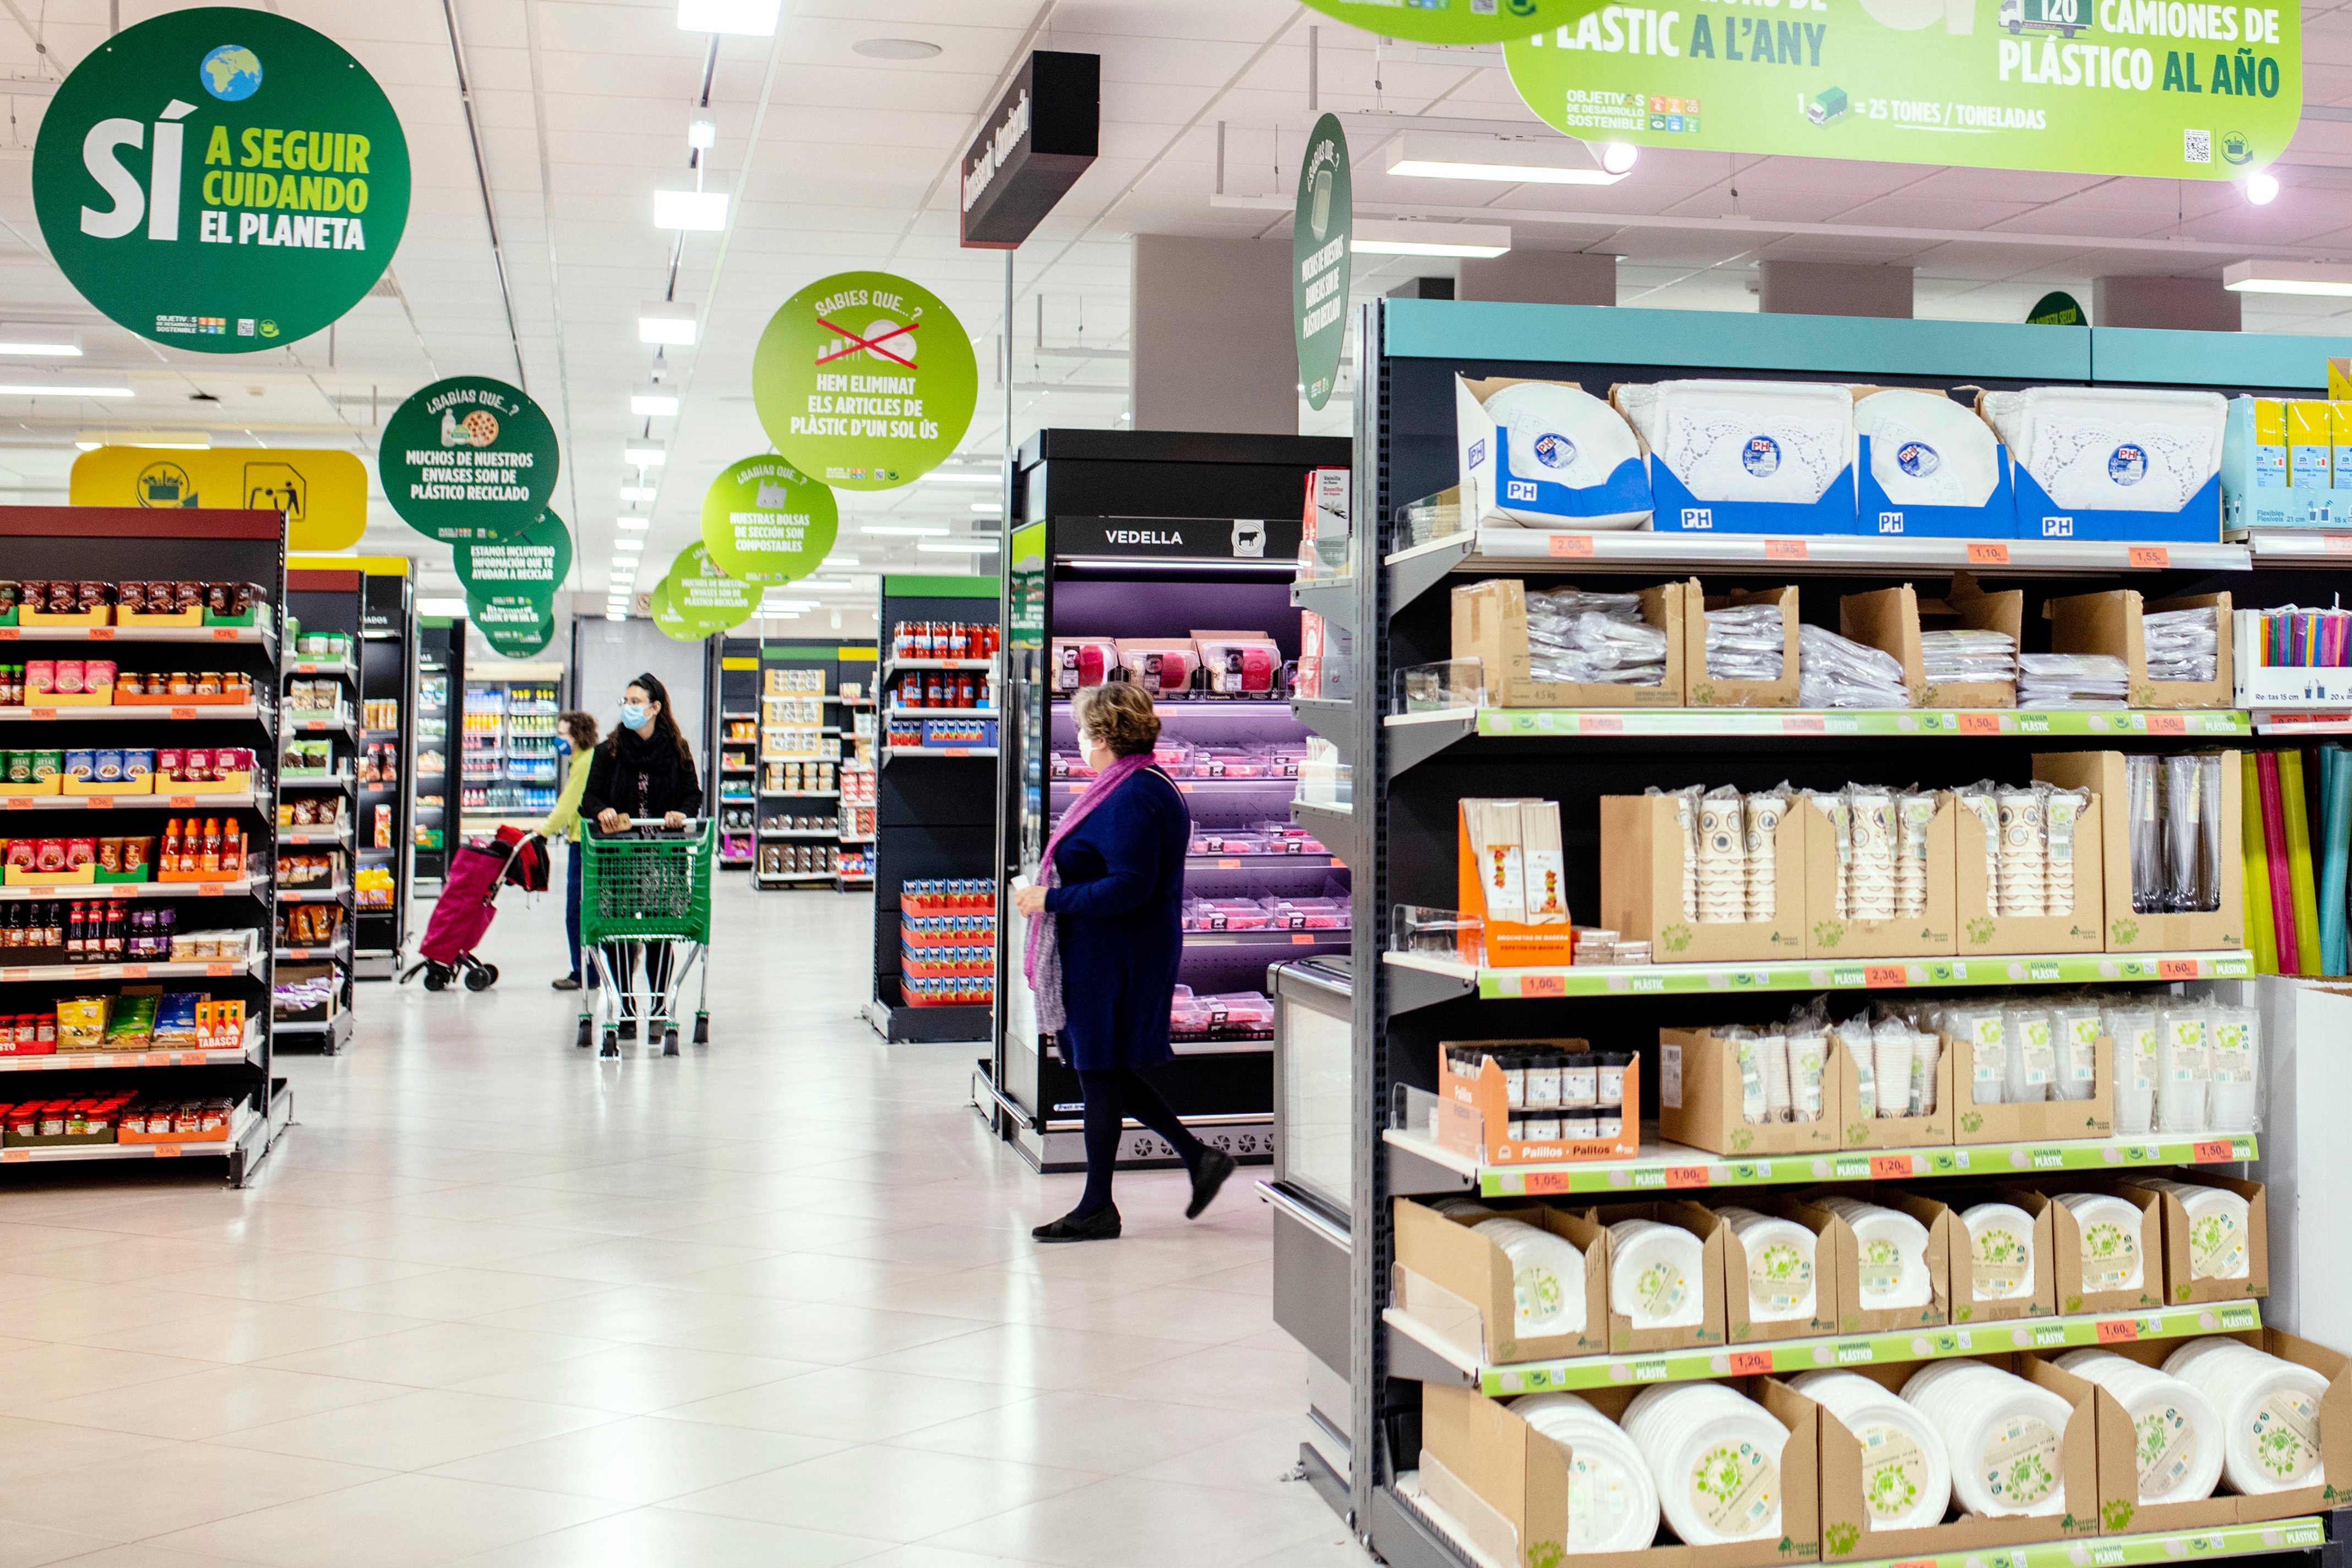 Els supermercats més econòmics per comprar productes per a nadons